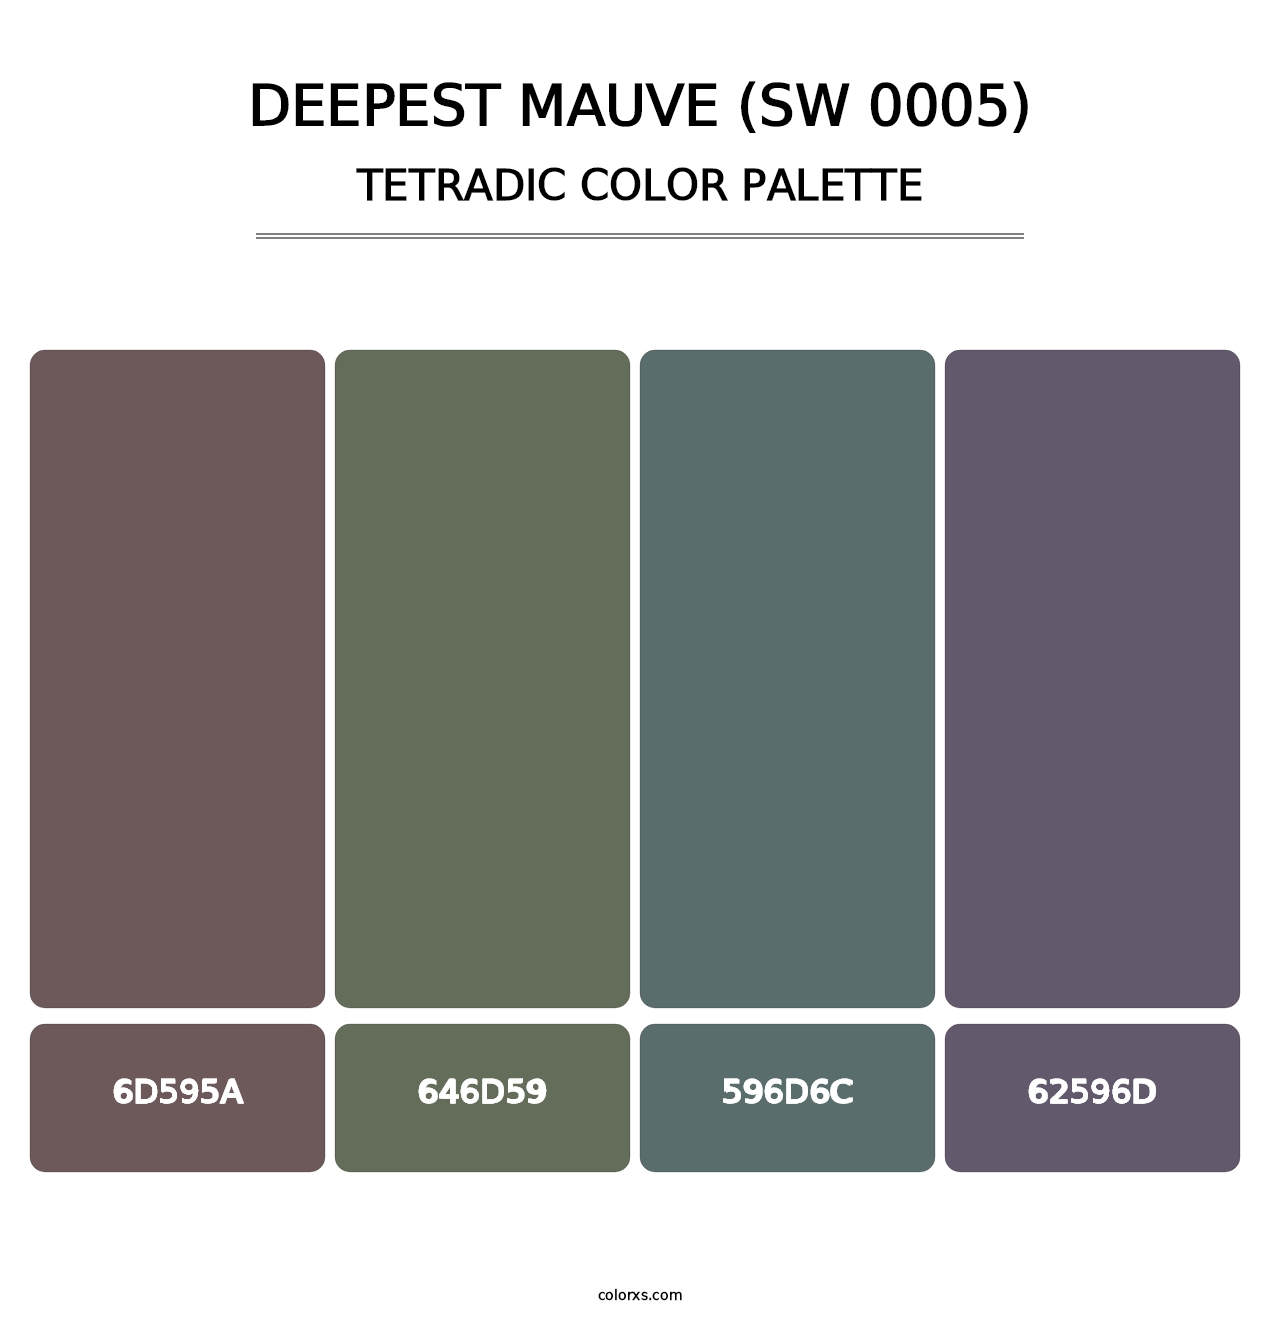 Deepest Mauve (SW 0005) - Tetradic Color Palette